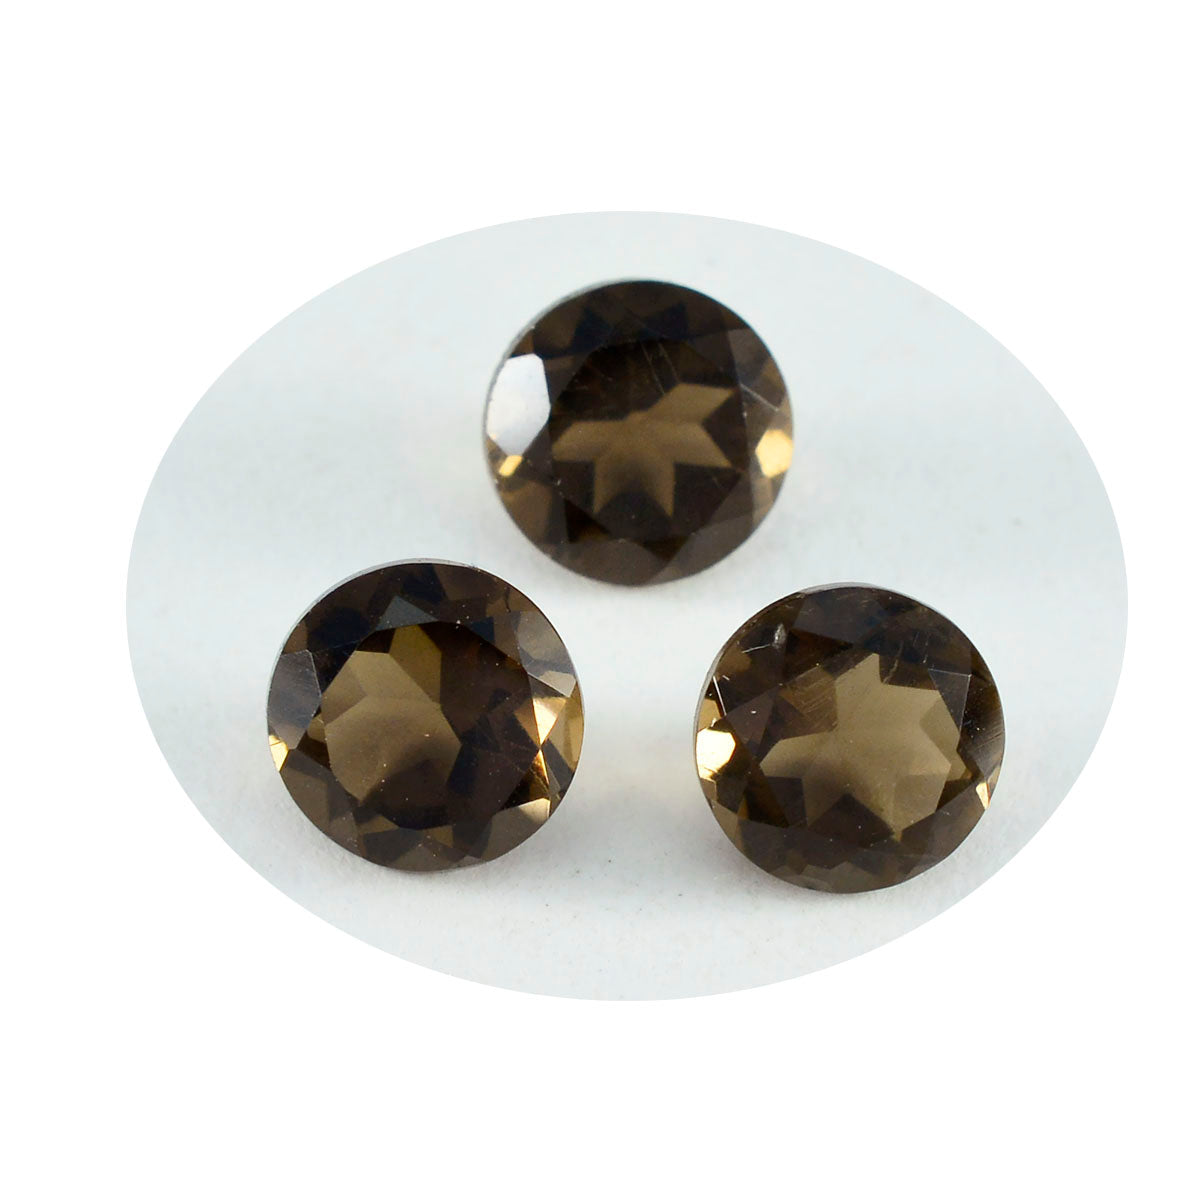 riyogems 1 шт. натуральный коричневый дымчатый кварц ограненный 10x10 мм круглая форма красивый качественный драгоценный камень